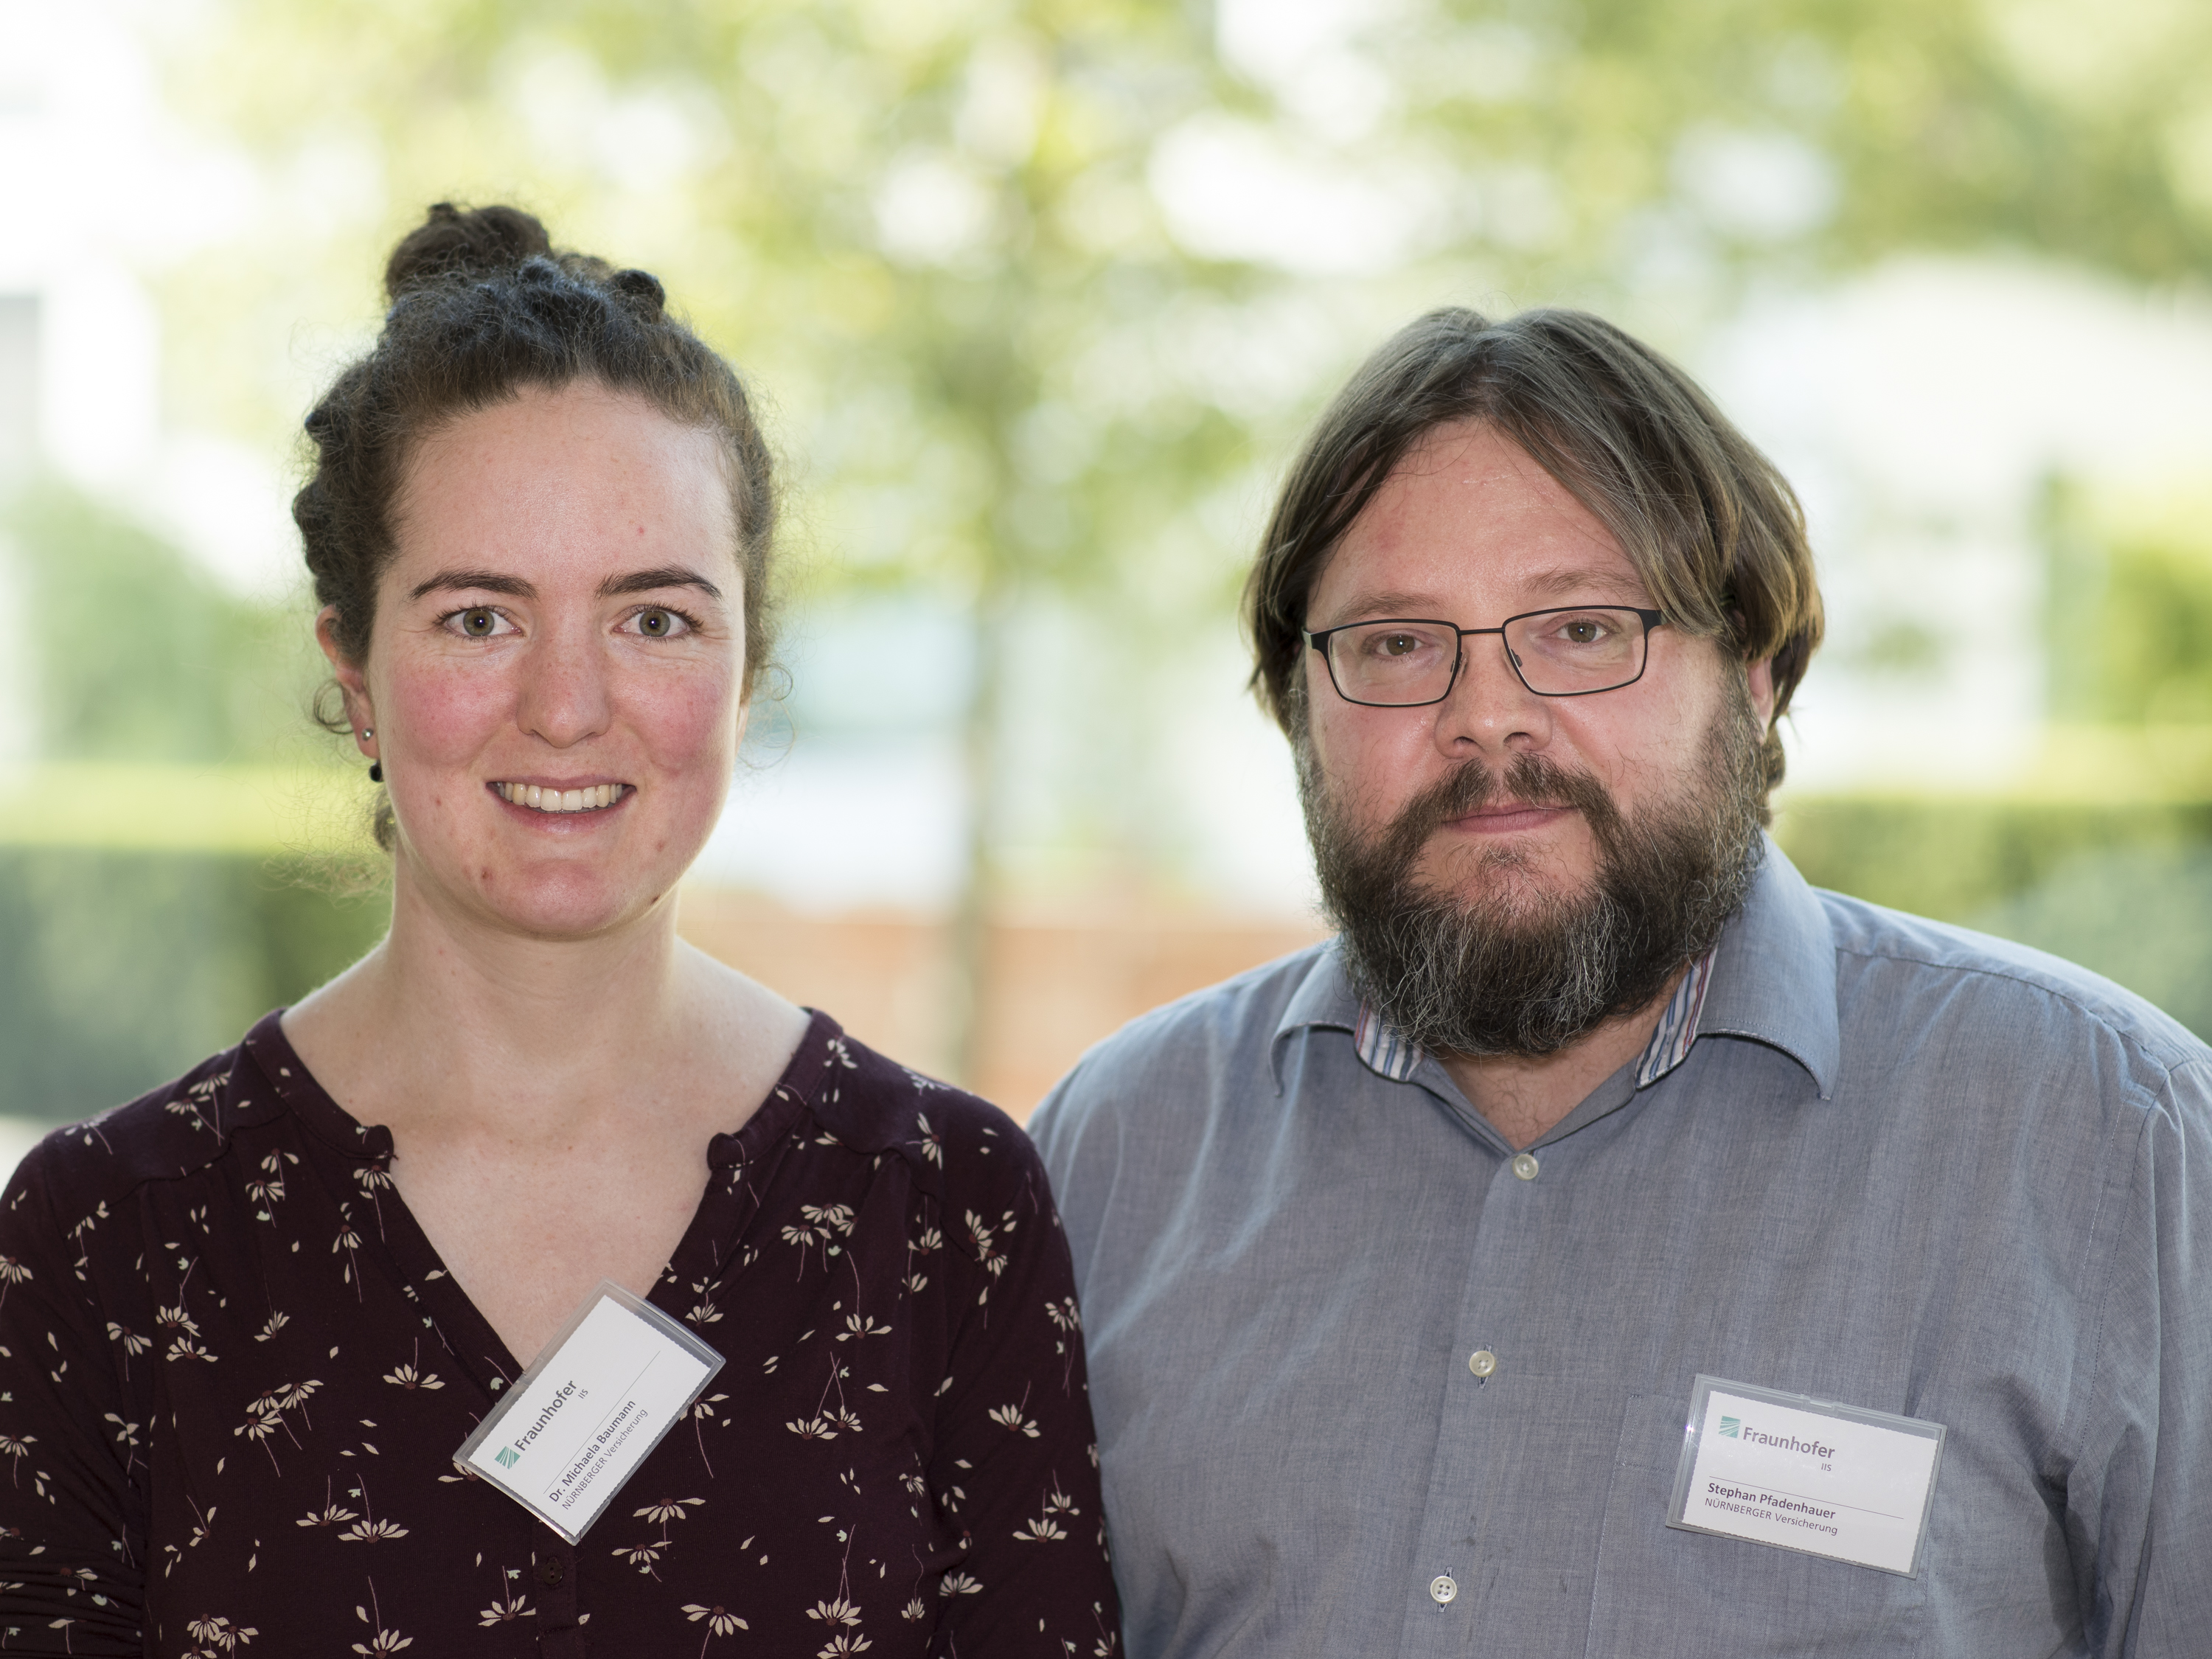 Dr. Michaela Baumann, Data Scientist, and Stephan Pfadenhauer, Data Engineer, Nürnberger Versicherung